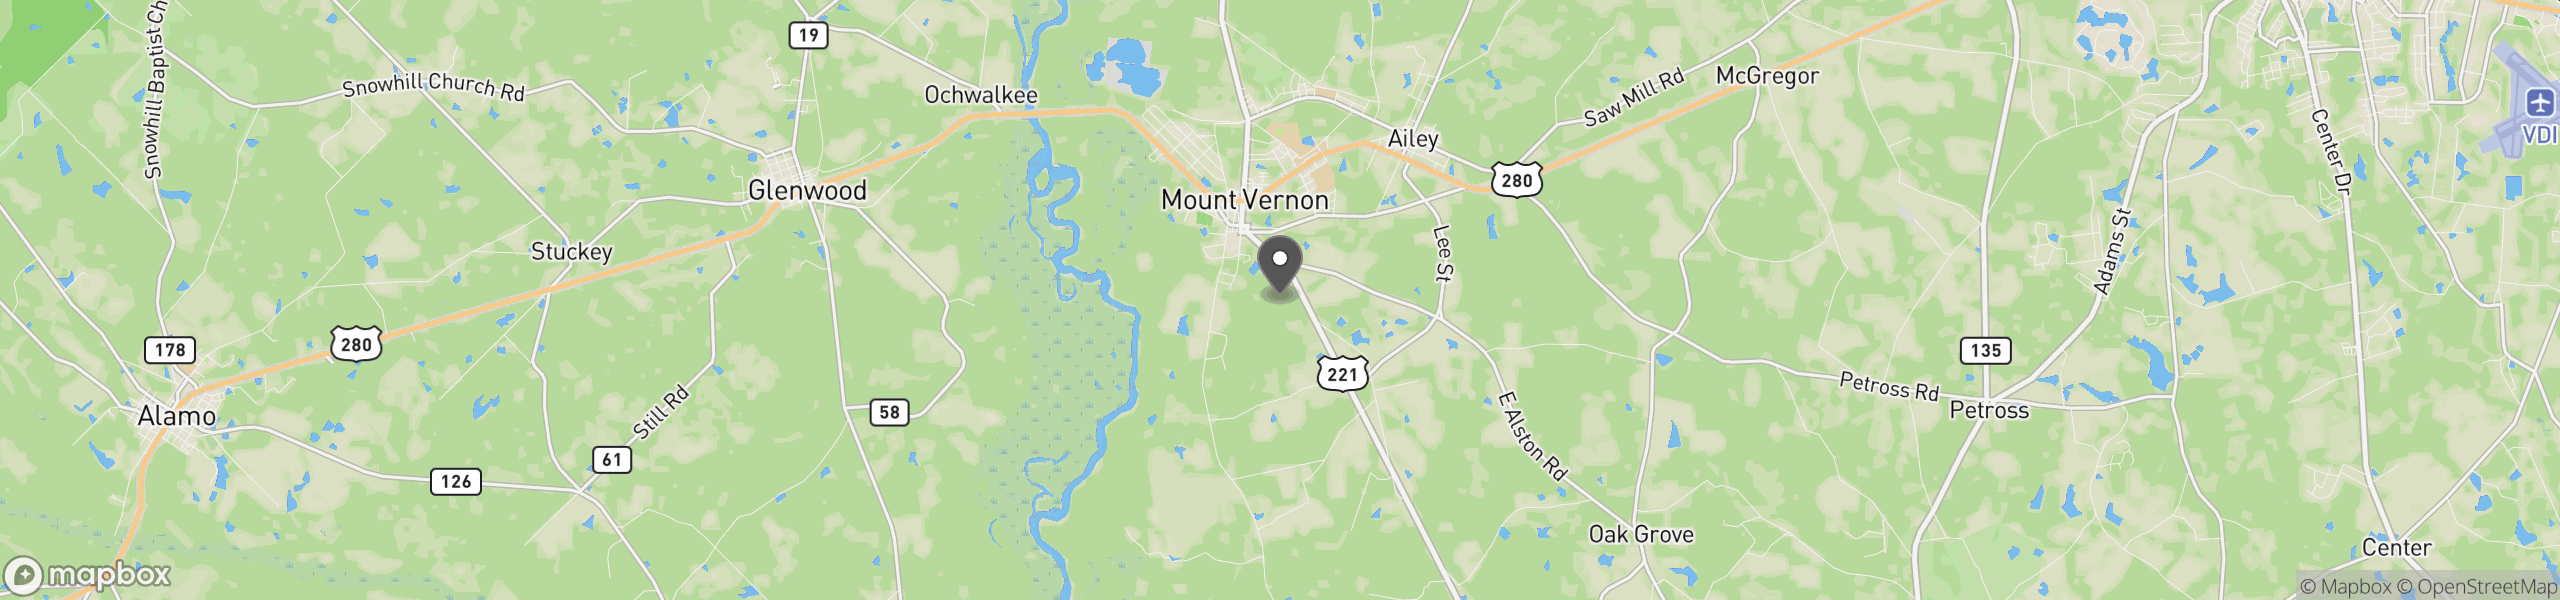 Mount Vernon, GA